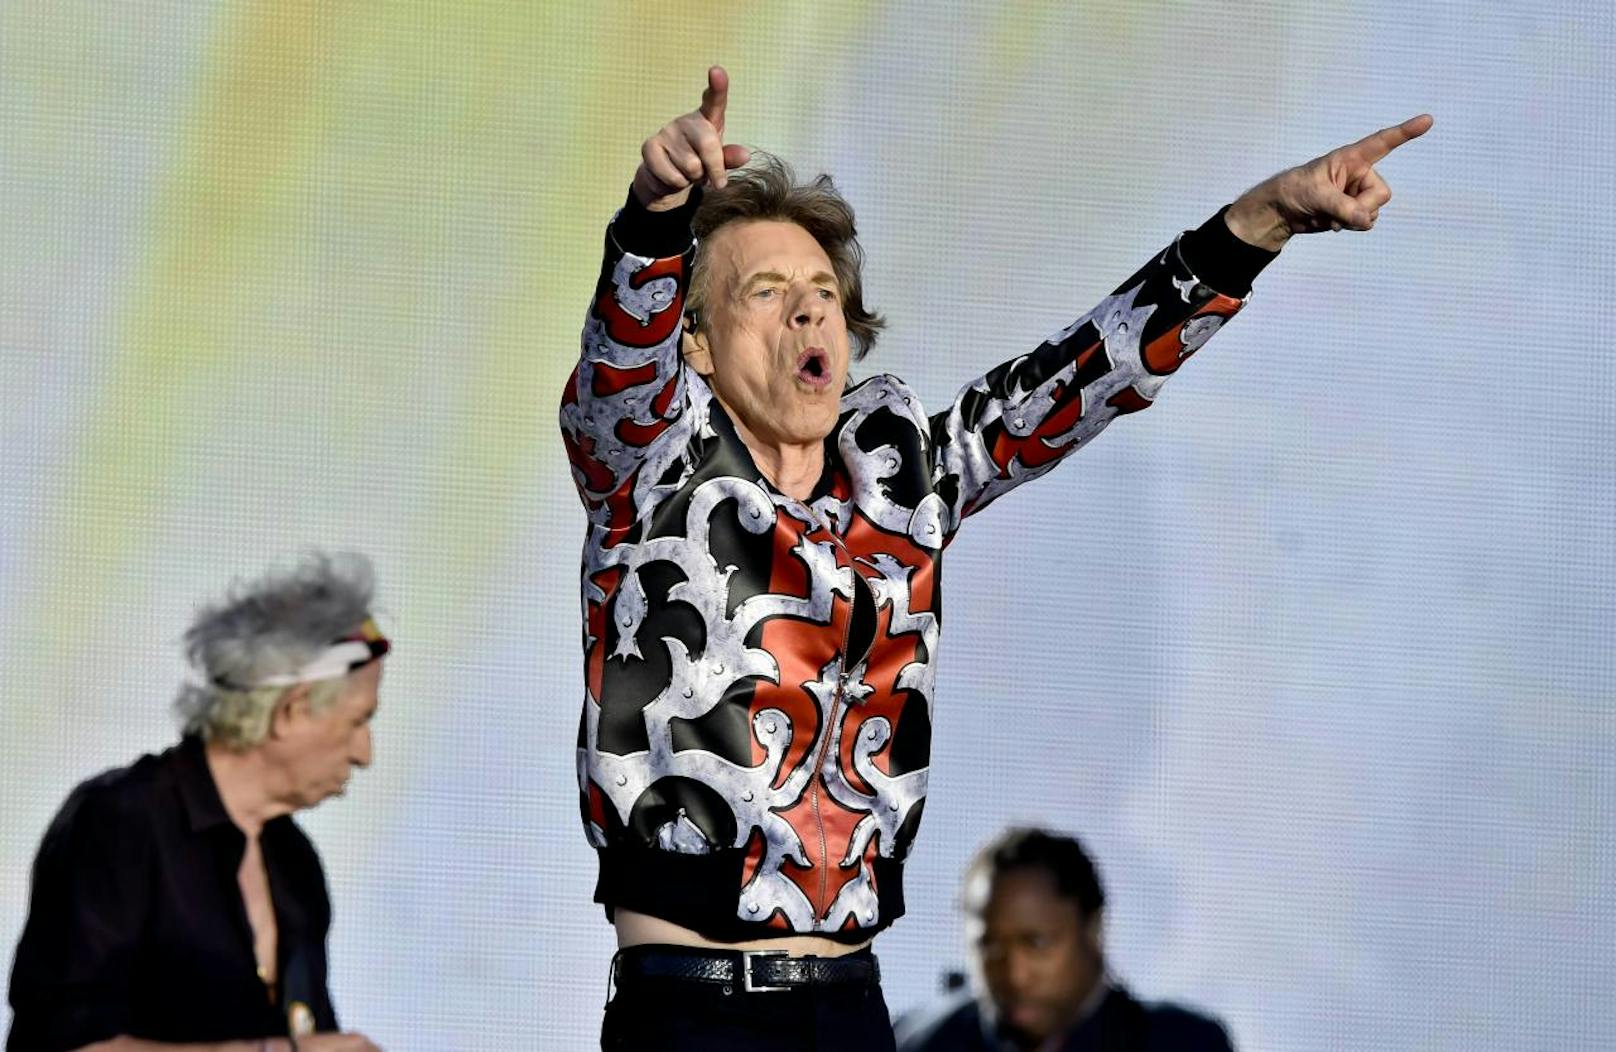 Rolling Stones in Wien – billigstes Ticket kostet 128 €